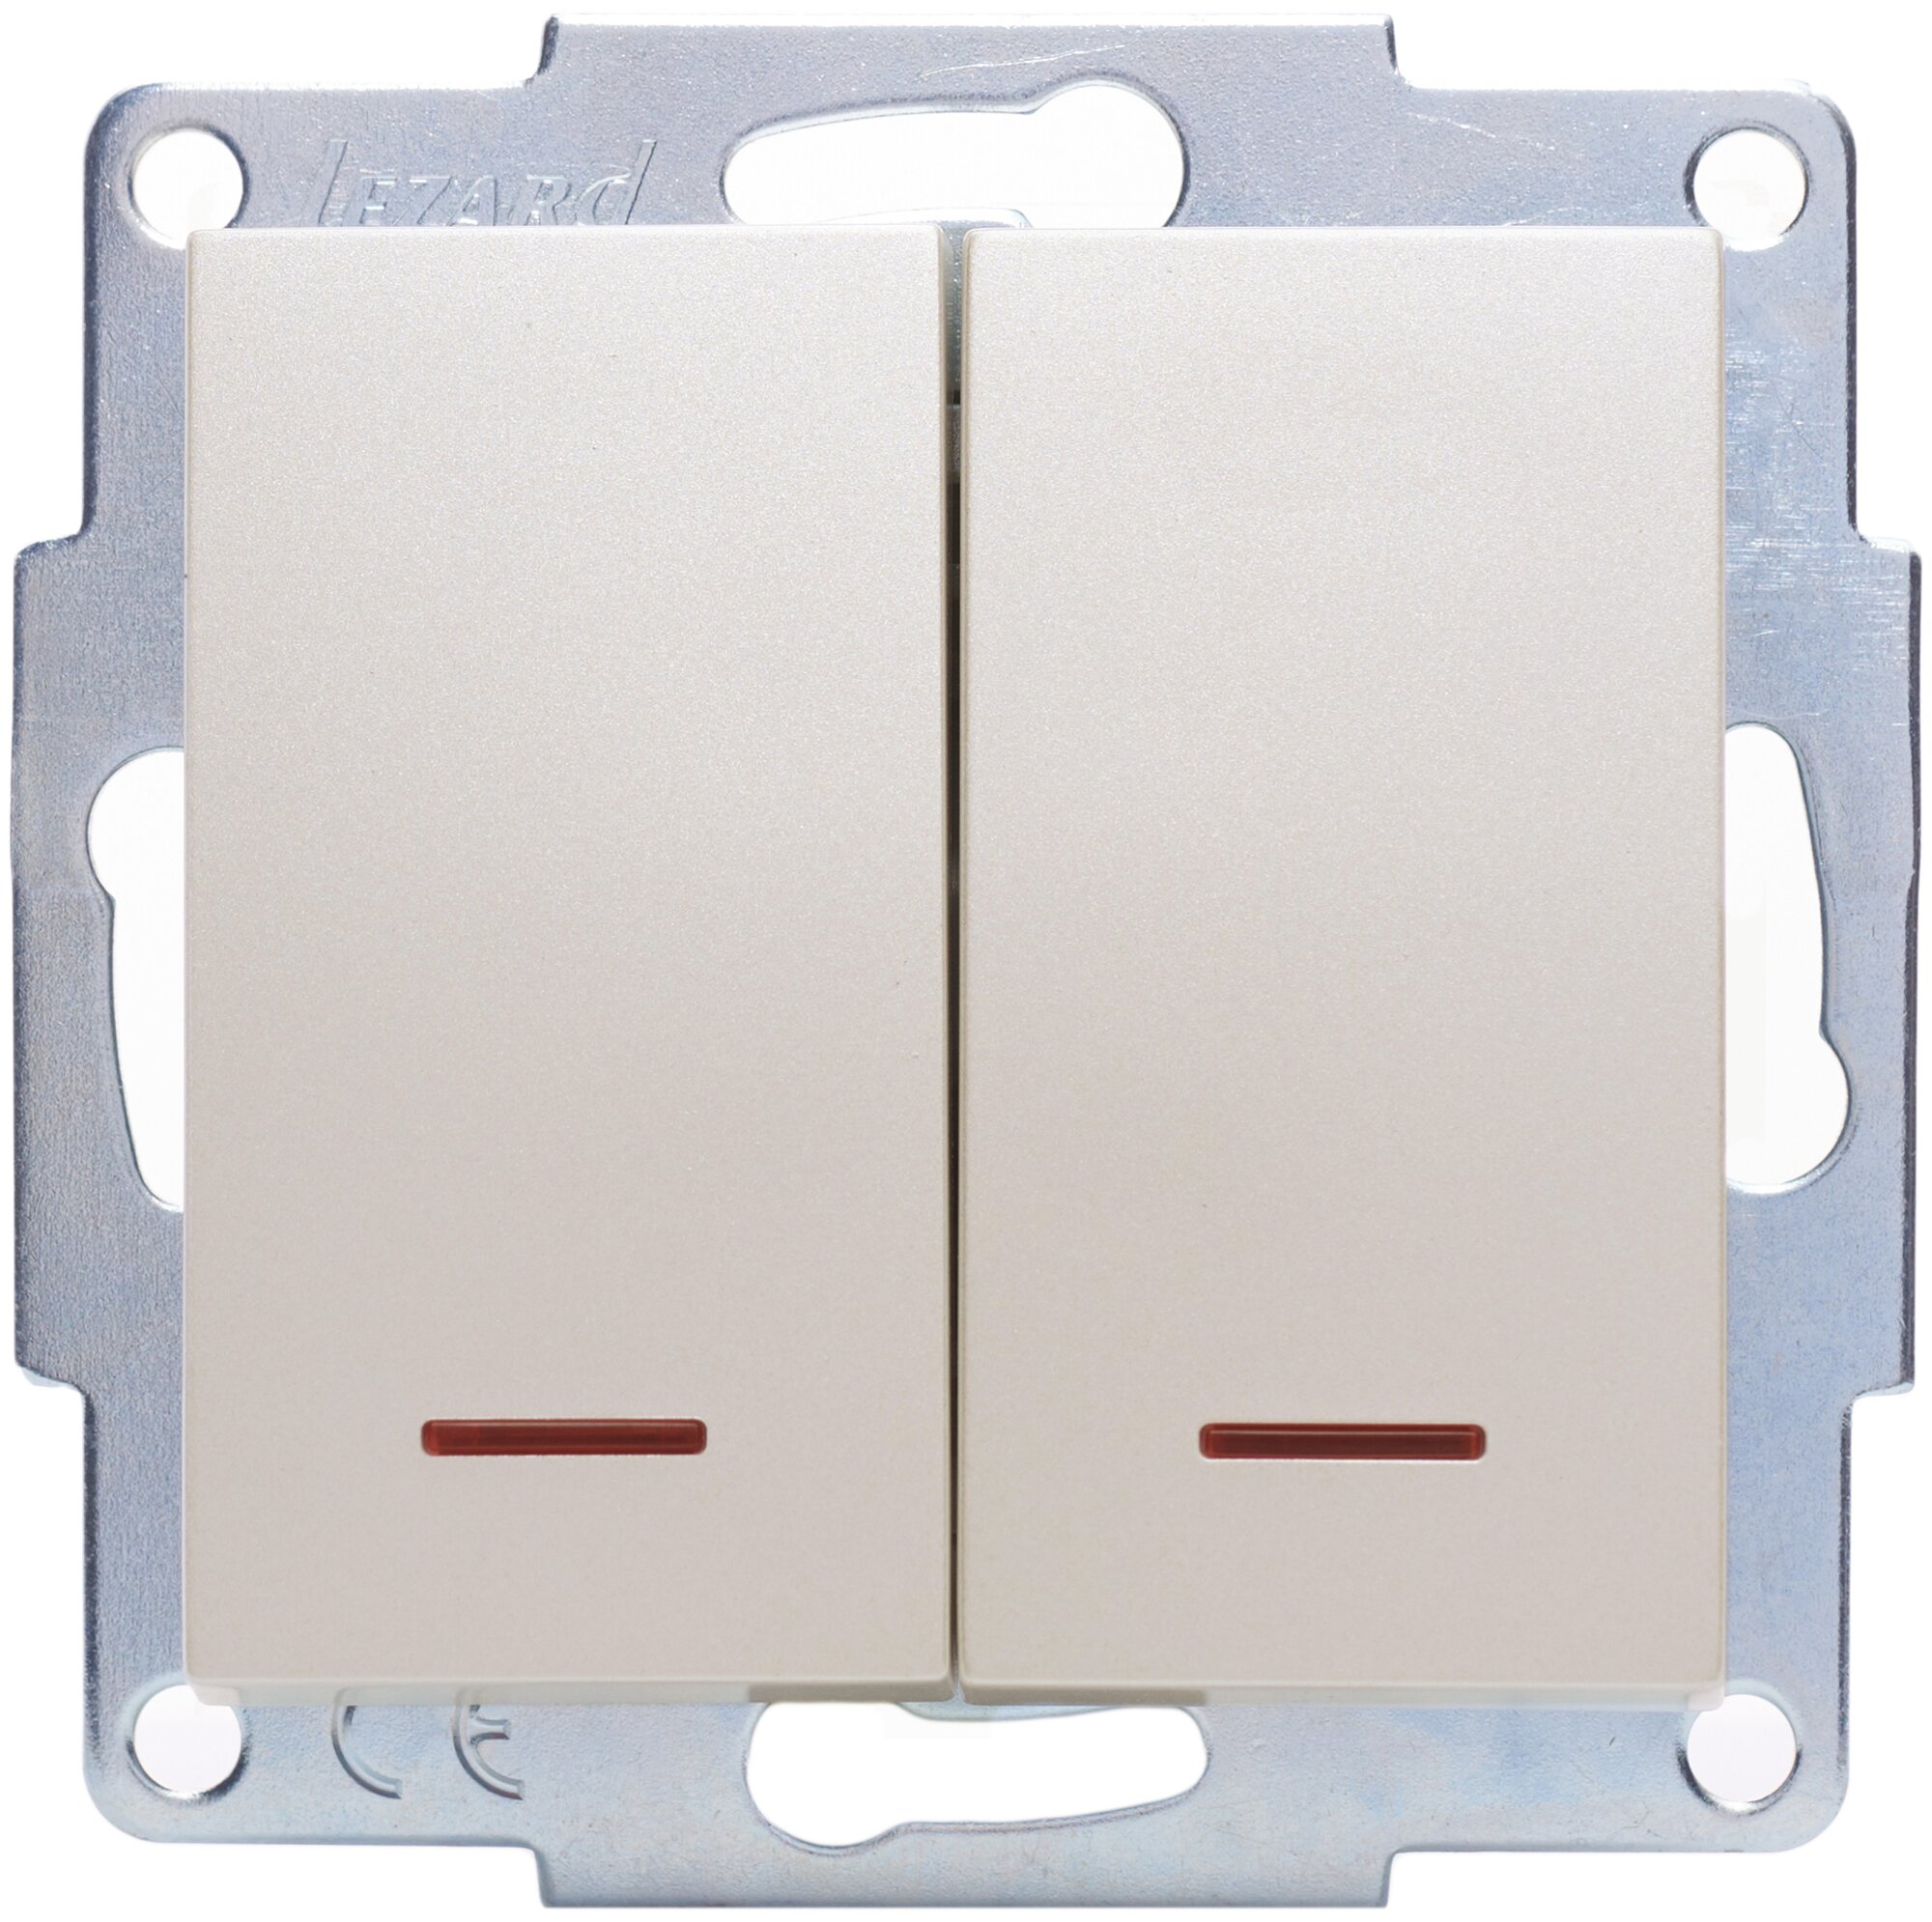 Lezard VESNA Выключатель двойной с подсветкой жемчужно-белый перламутр 742-3088-112